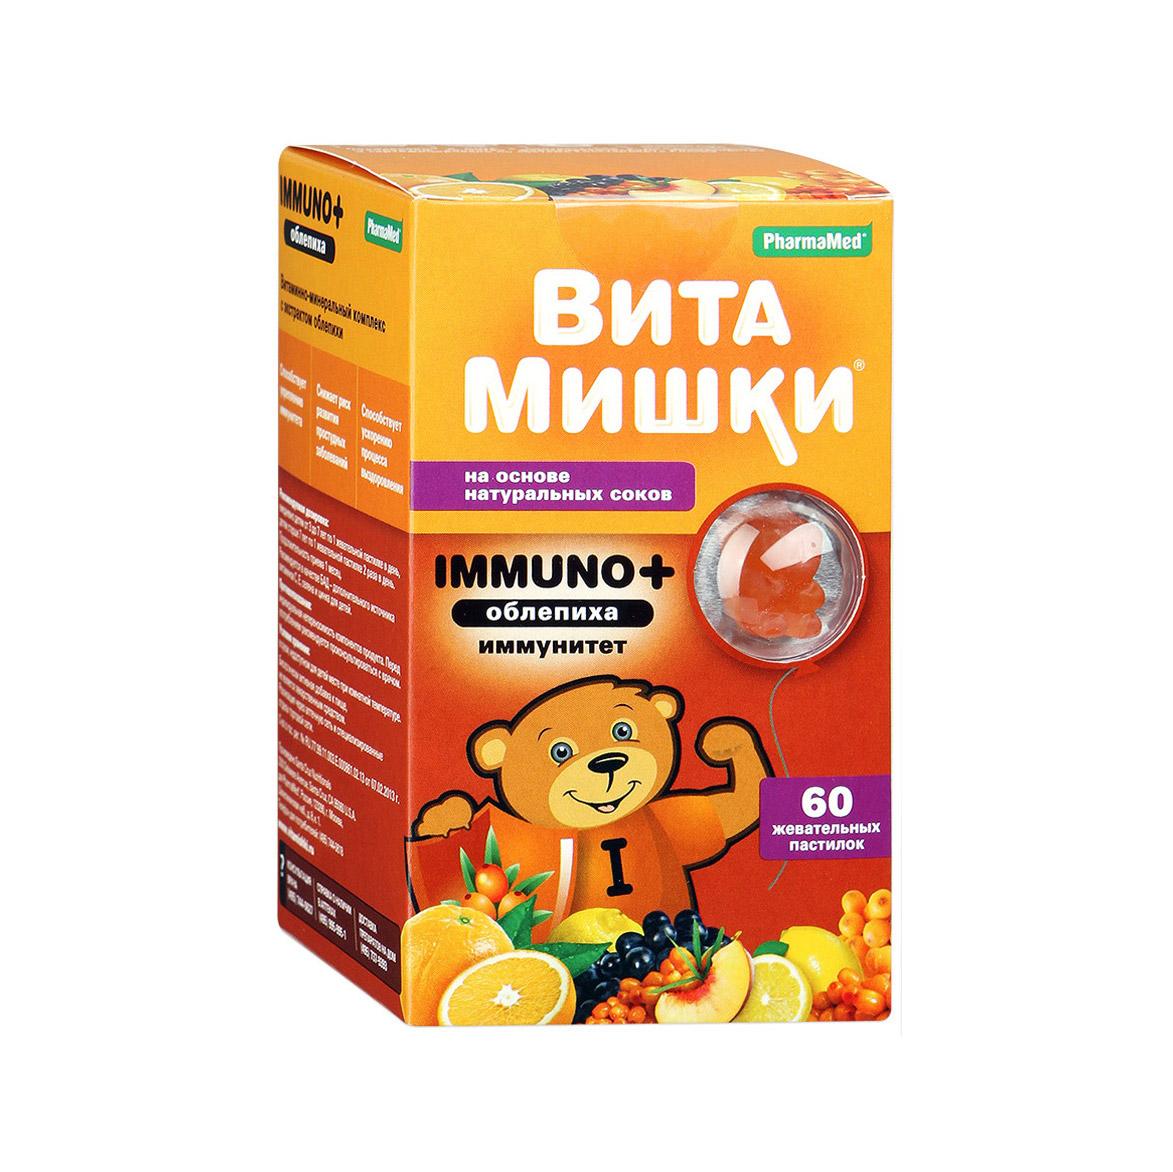 Хорошие витамины для детей 2 лет. Витамишки витамины для иммунитета. Витамины с облепихой для детей. Витамины иммуно для детей. Витамишки с облепихой.